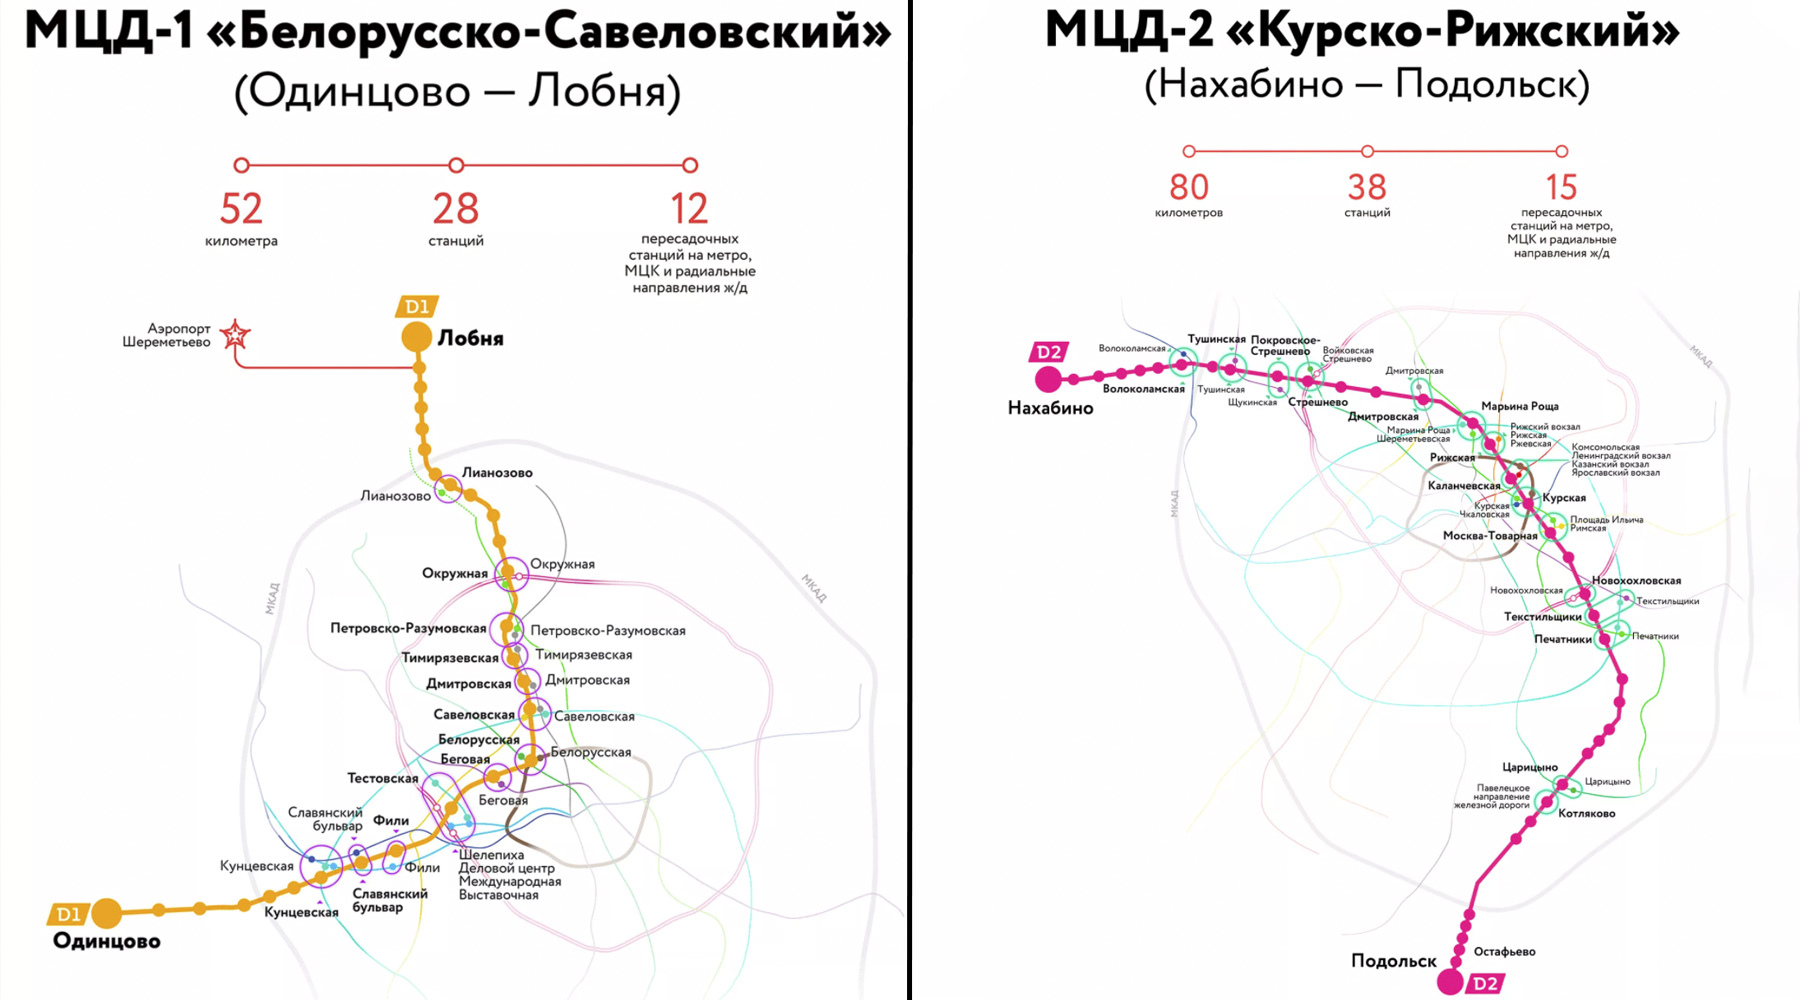 Курская нахабино расписание. МЦД-2 схема станций. Схема метро Москвы d2. МЦД-1 схема станций. МЦД Подольск схема станций.